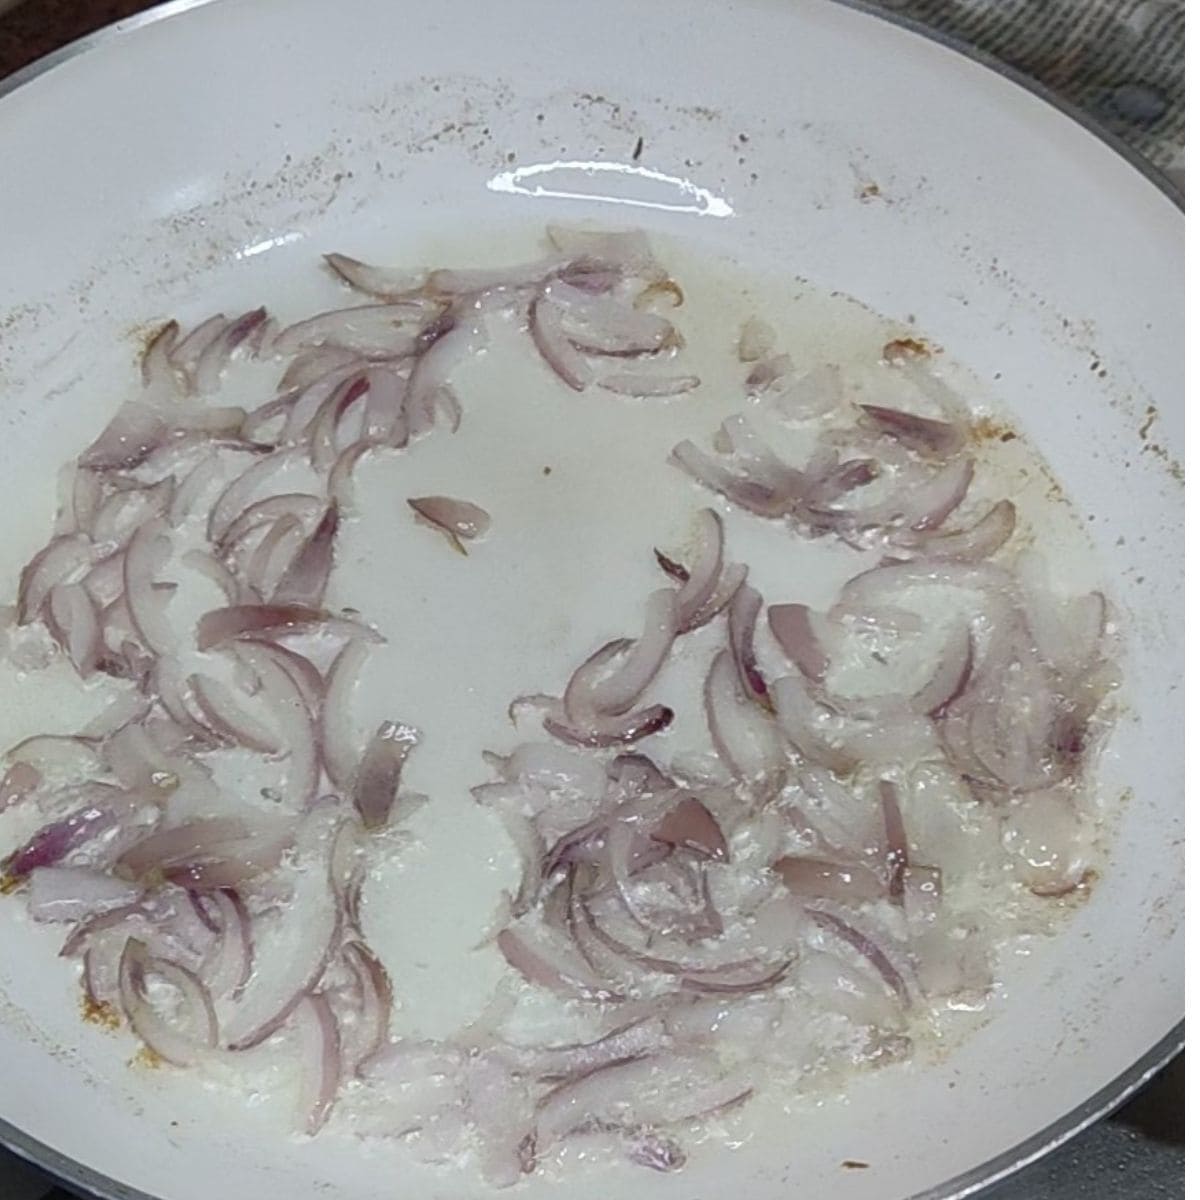 sauting the onions for rajma masala